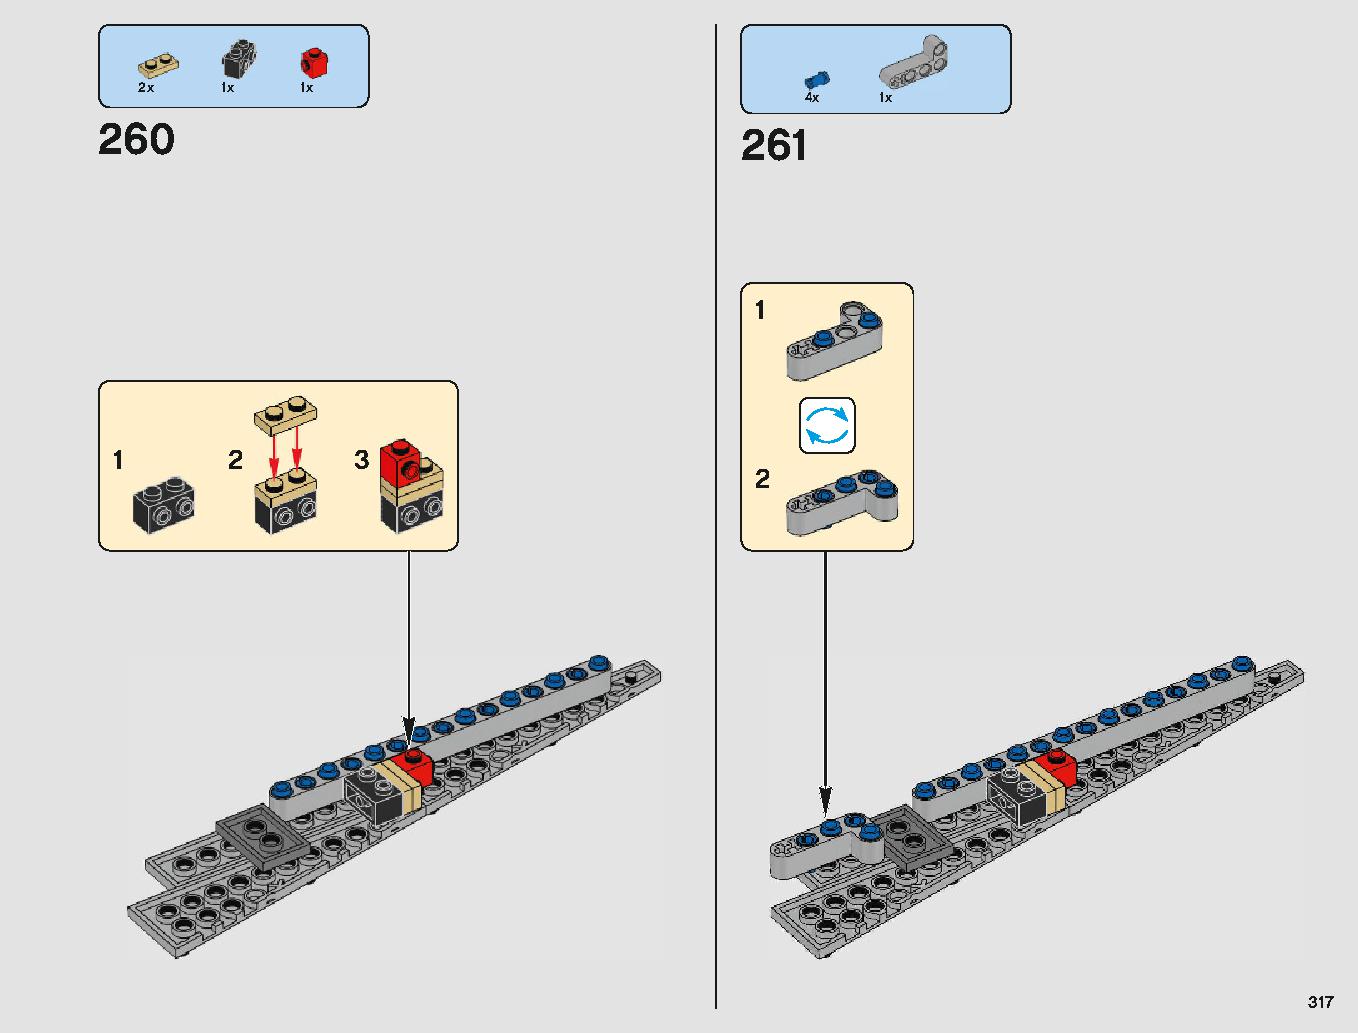 クラウド・シティ 75222 レゴの商品情報 レゴの説明書・組立方法 317 page